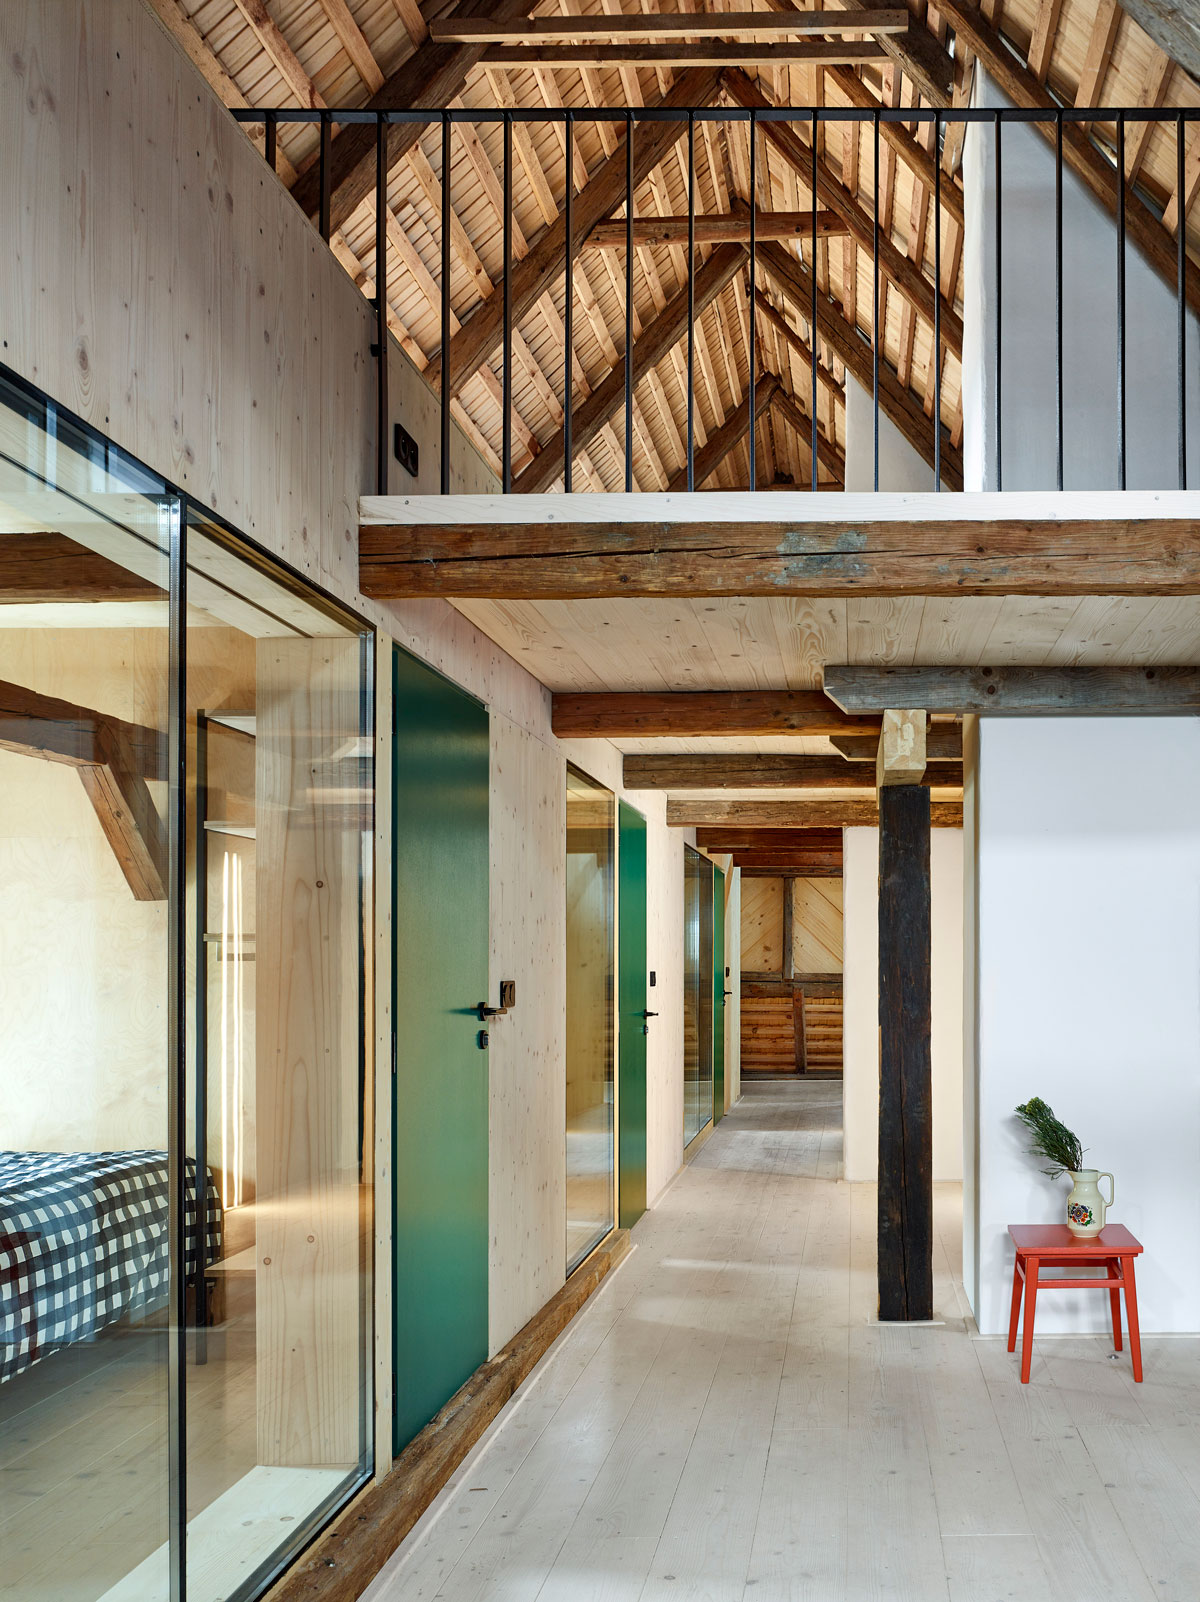 Moderní interiér chalupy s prosklenými vstupy do pokojů